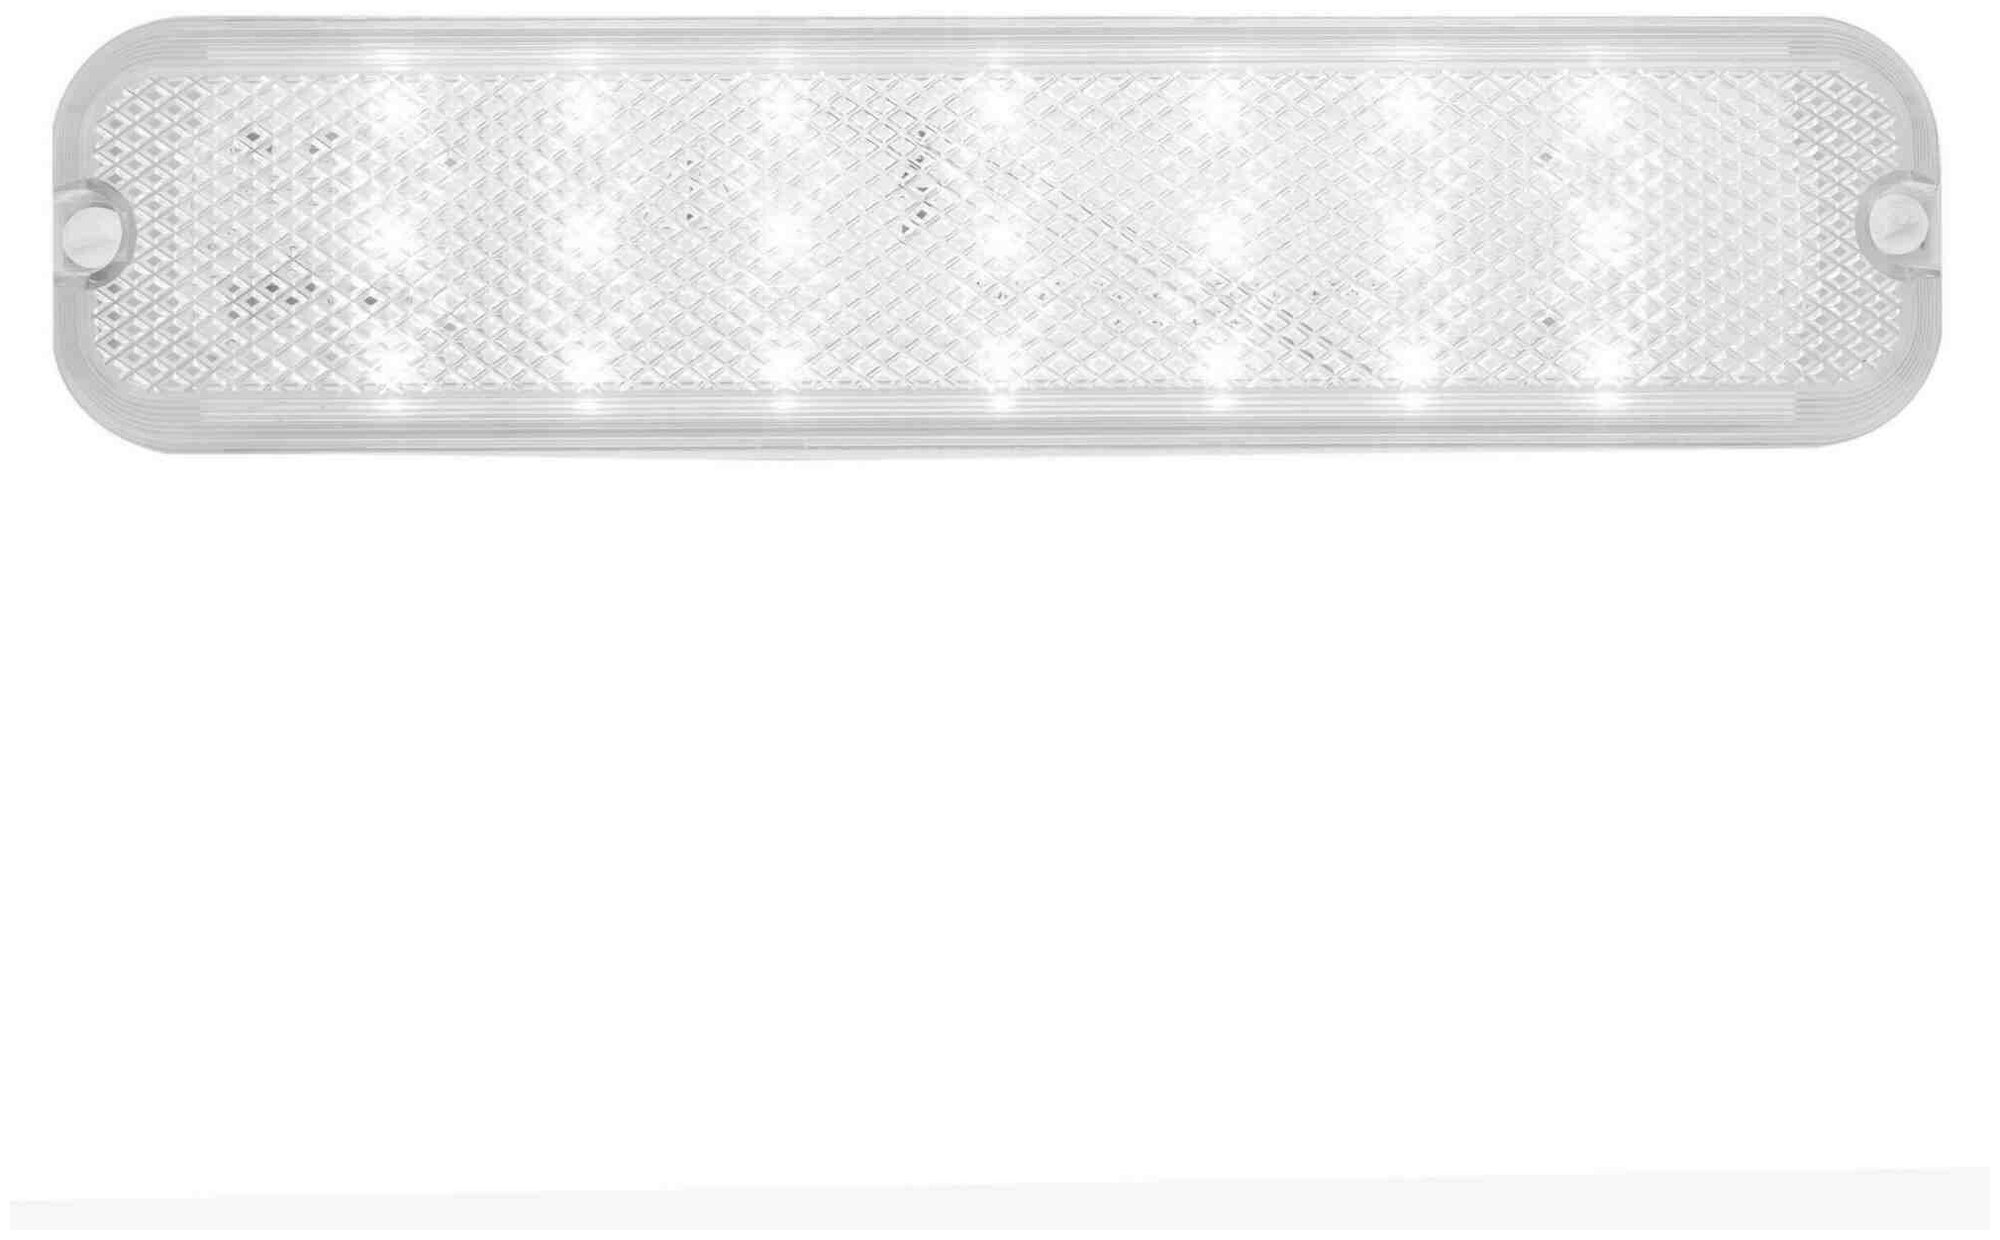 Настенно-потолочный светодиодный светильник Apeyron ДПБ 01-6-001 антивандальный в форме прямоугольника, цвет белый, мощность 6 Вт, световой поток 700 Лм, степень защиты IP40. - фотография № 6